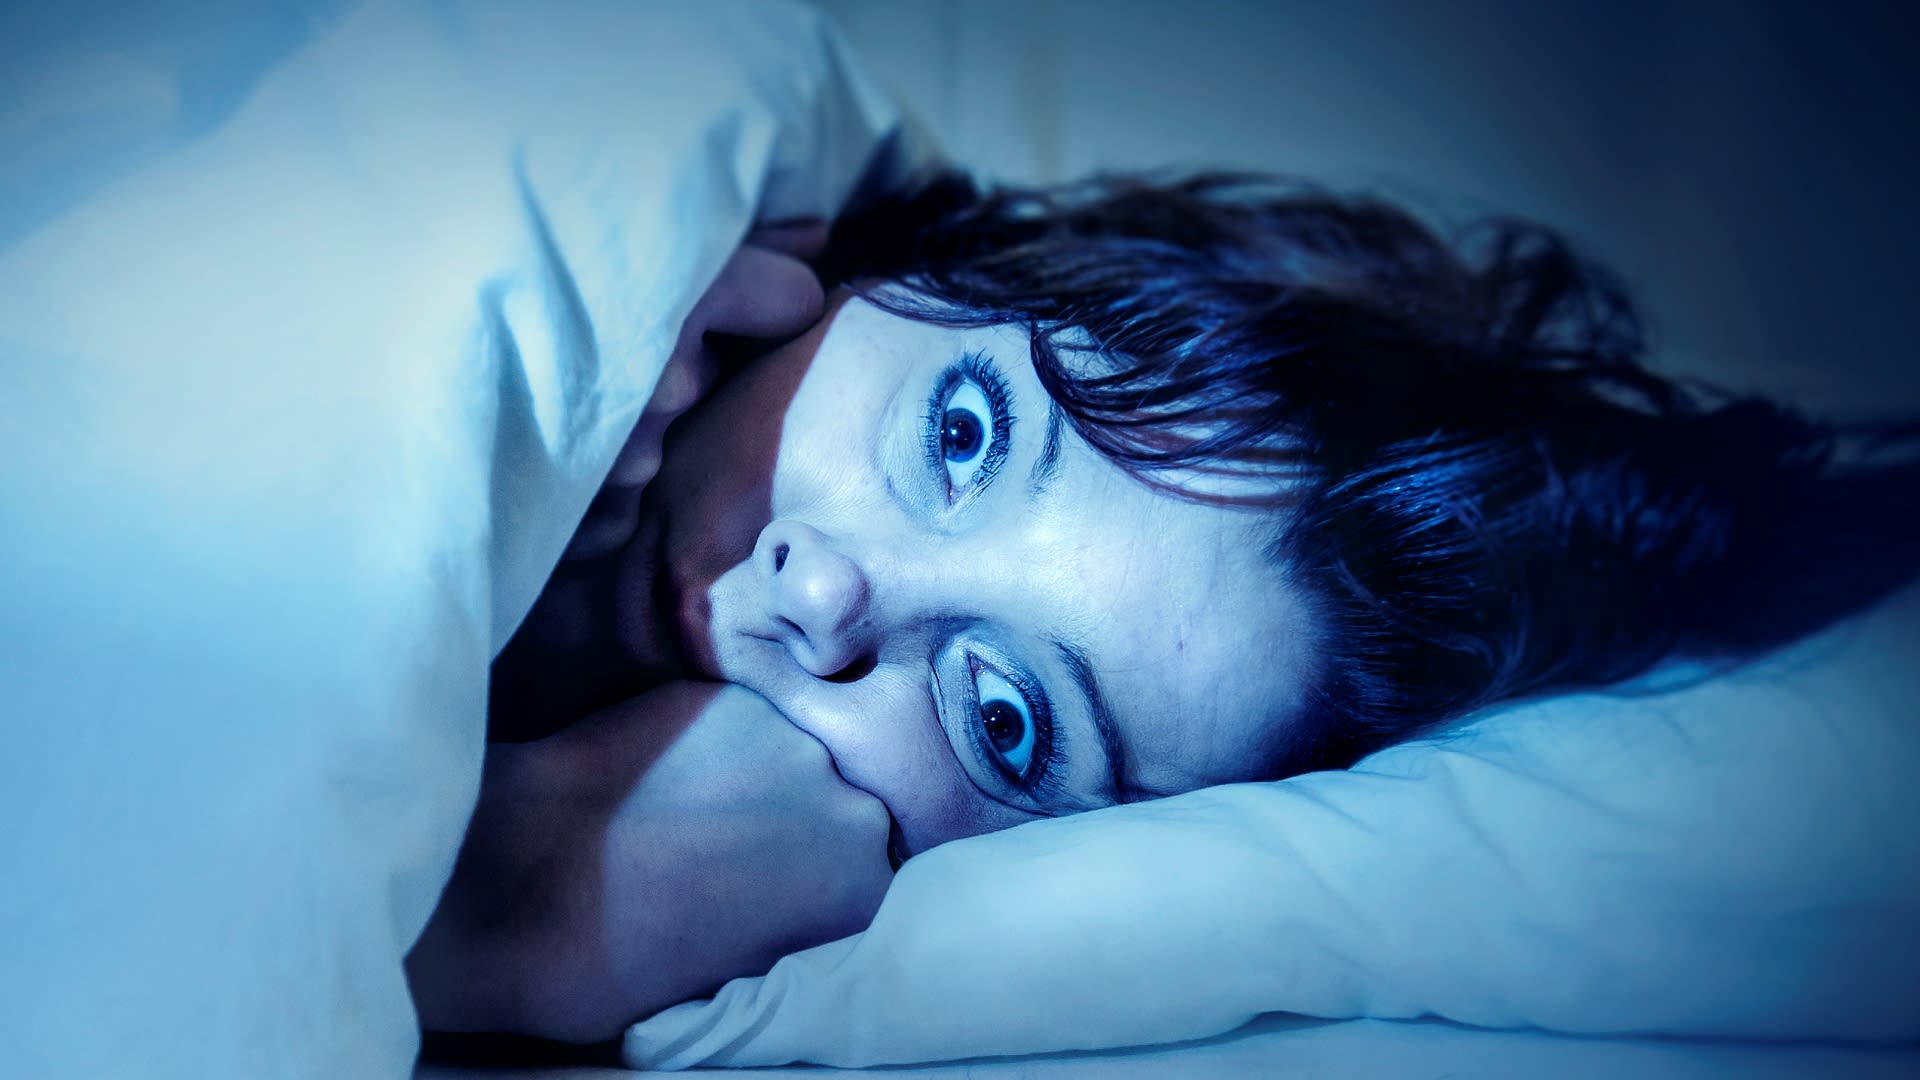 Smrtelná rodinná nespavost je naštěstí mimořádně vzácná